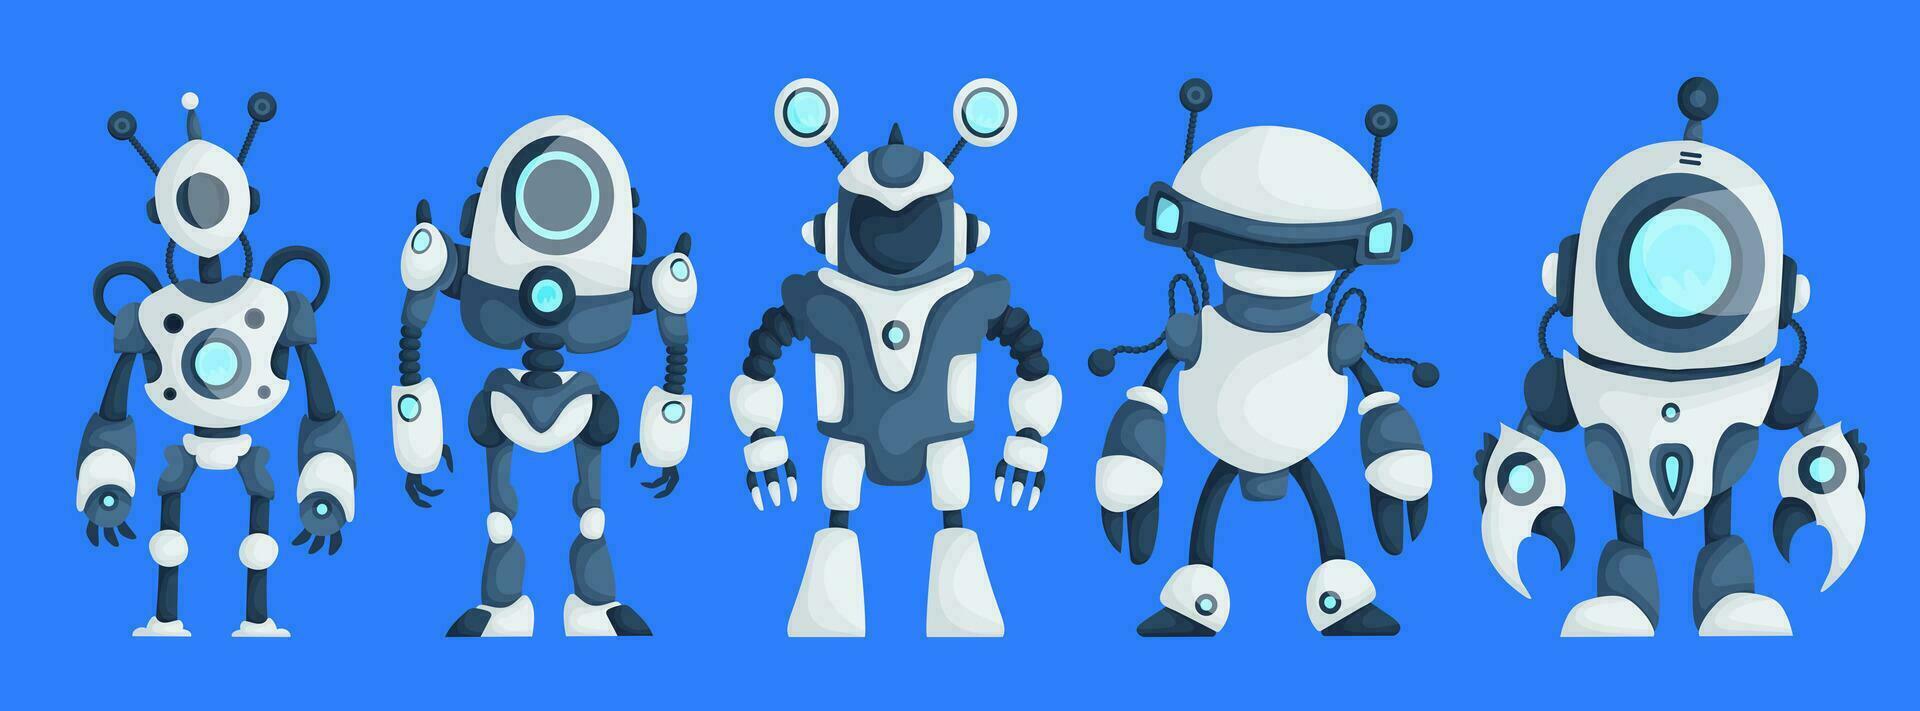 ensemble de cinq moderne des robots isolé sur bleu Contexte mignonne personnage dessin animé artificiel intelligence concept plat vecteur illustration